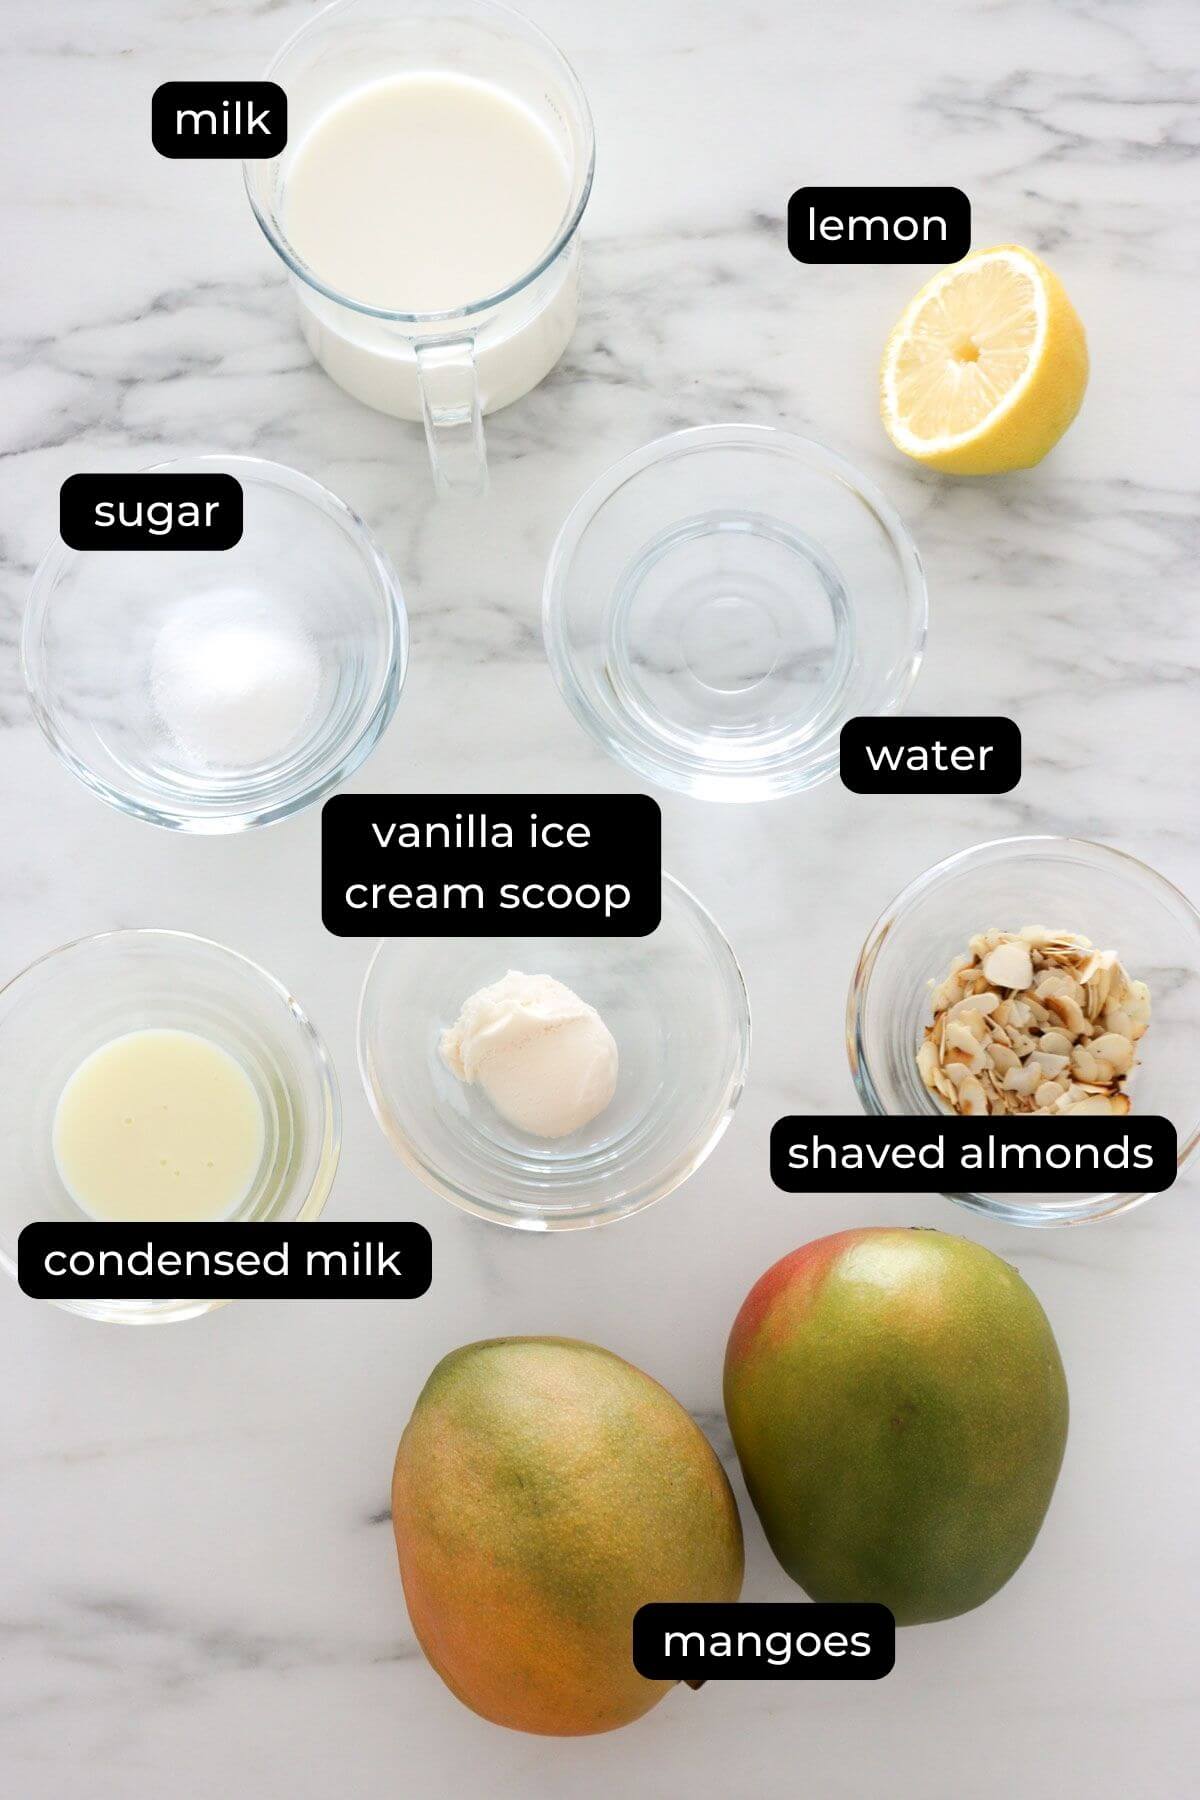 mango bingsu ingredients